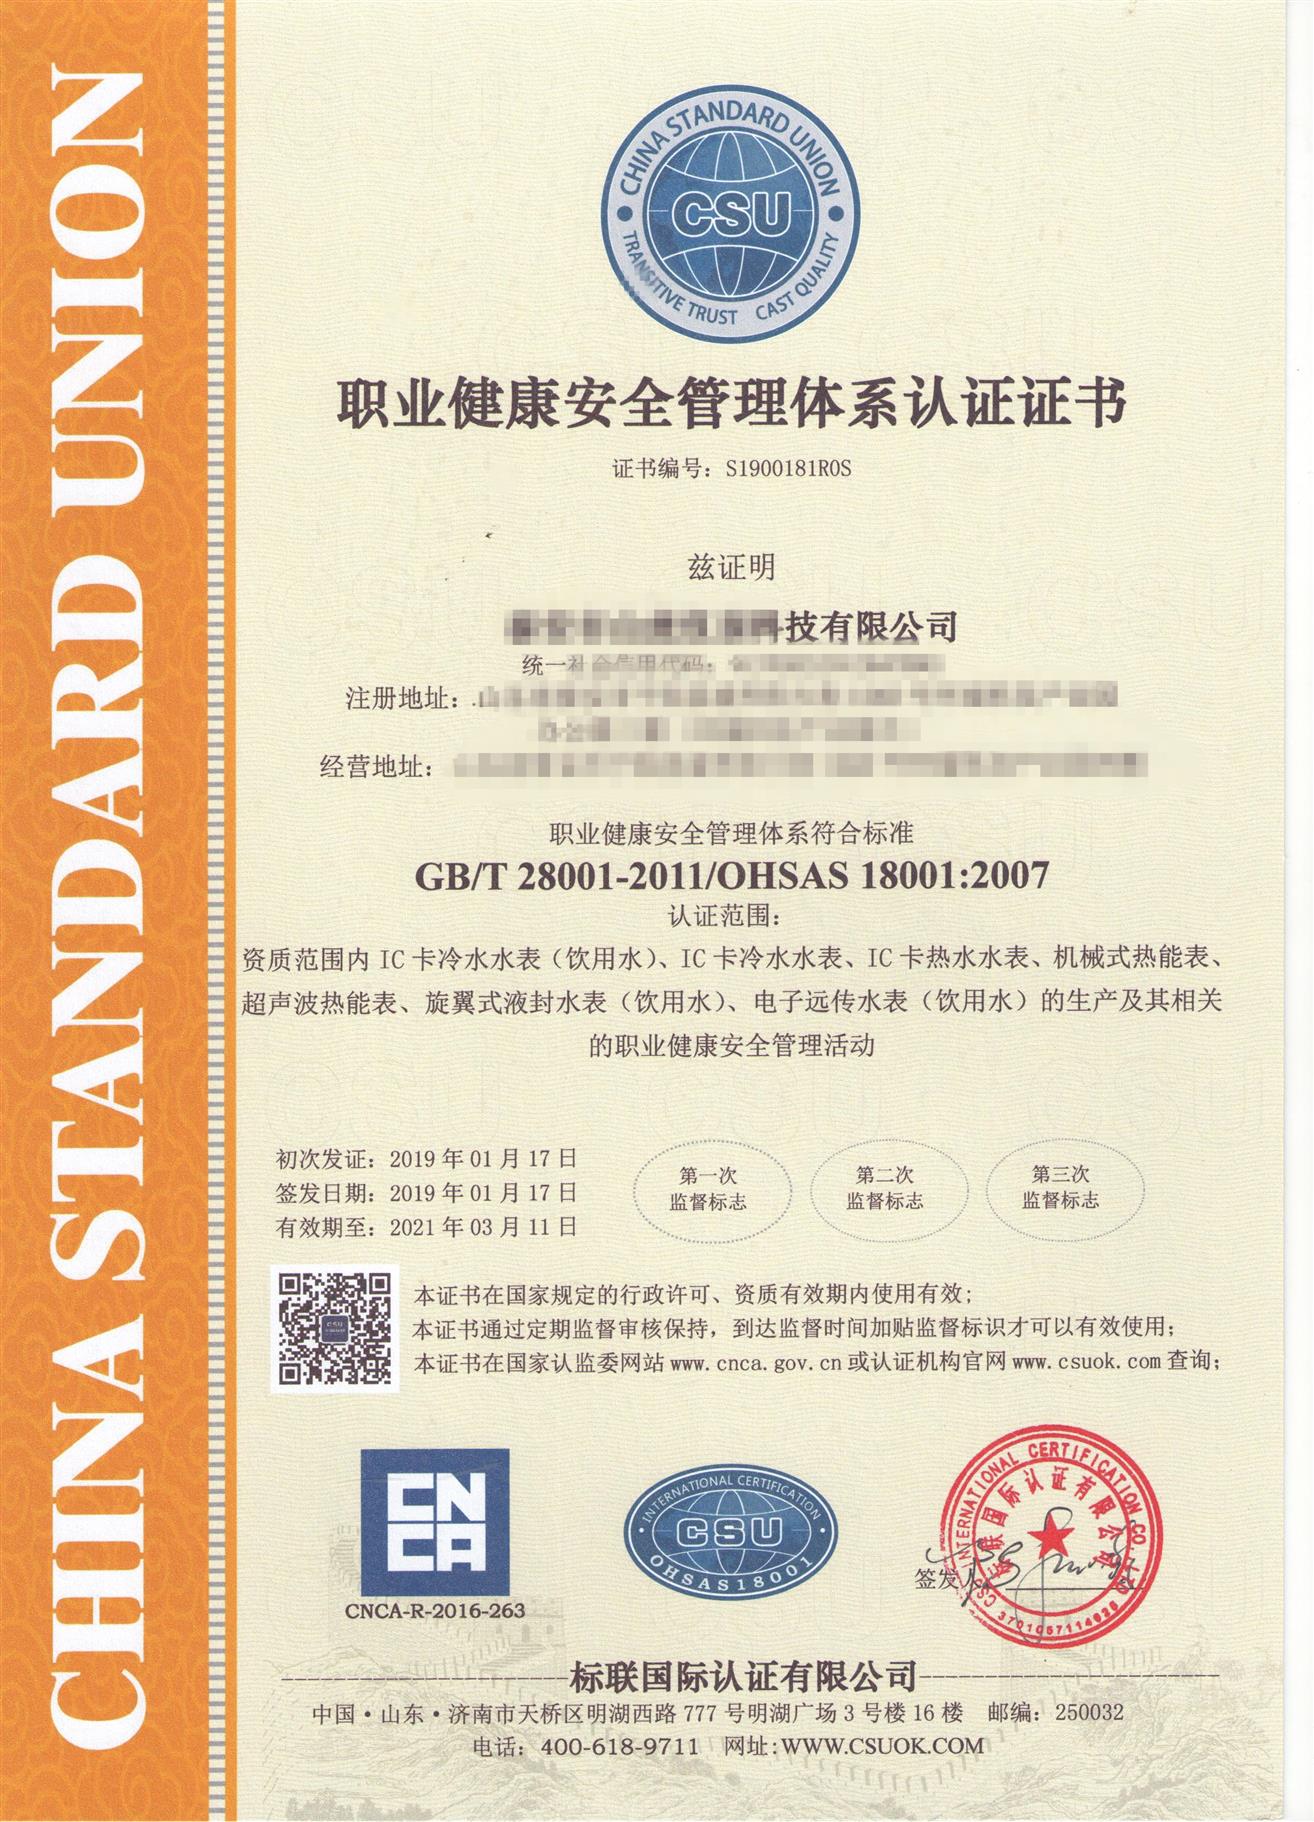 日照ISO18001申请范围 山东凯文知识产权代理有限公司